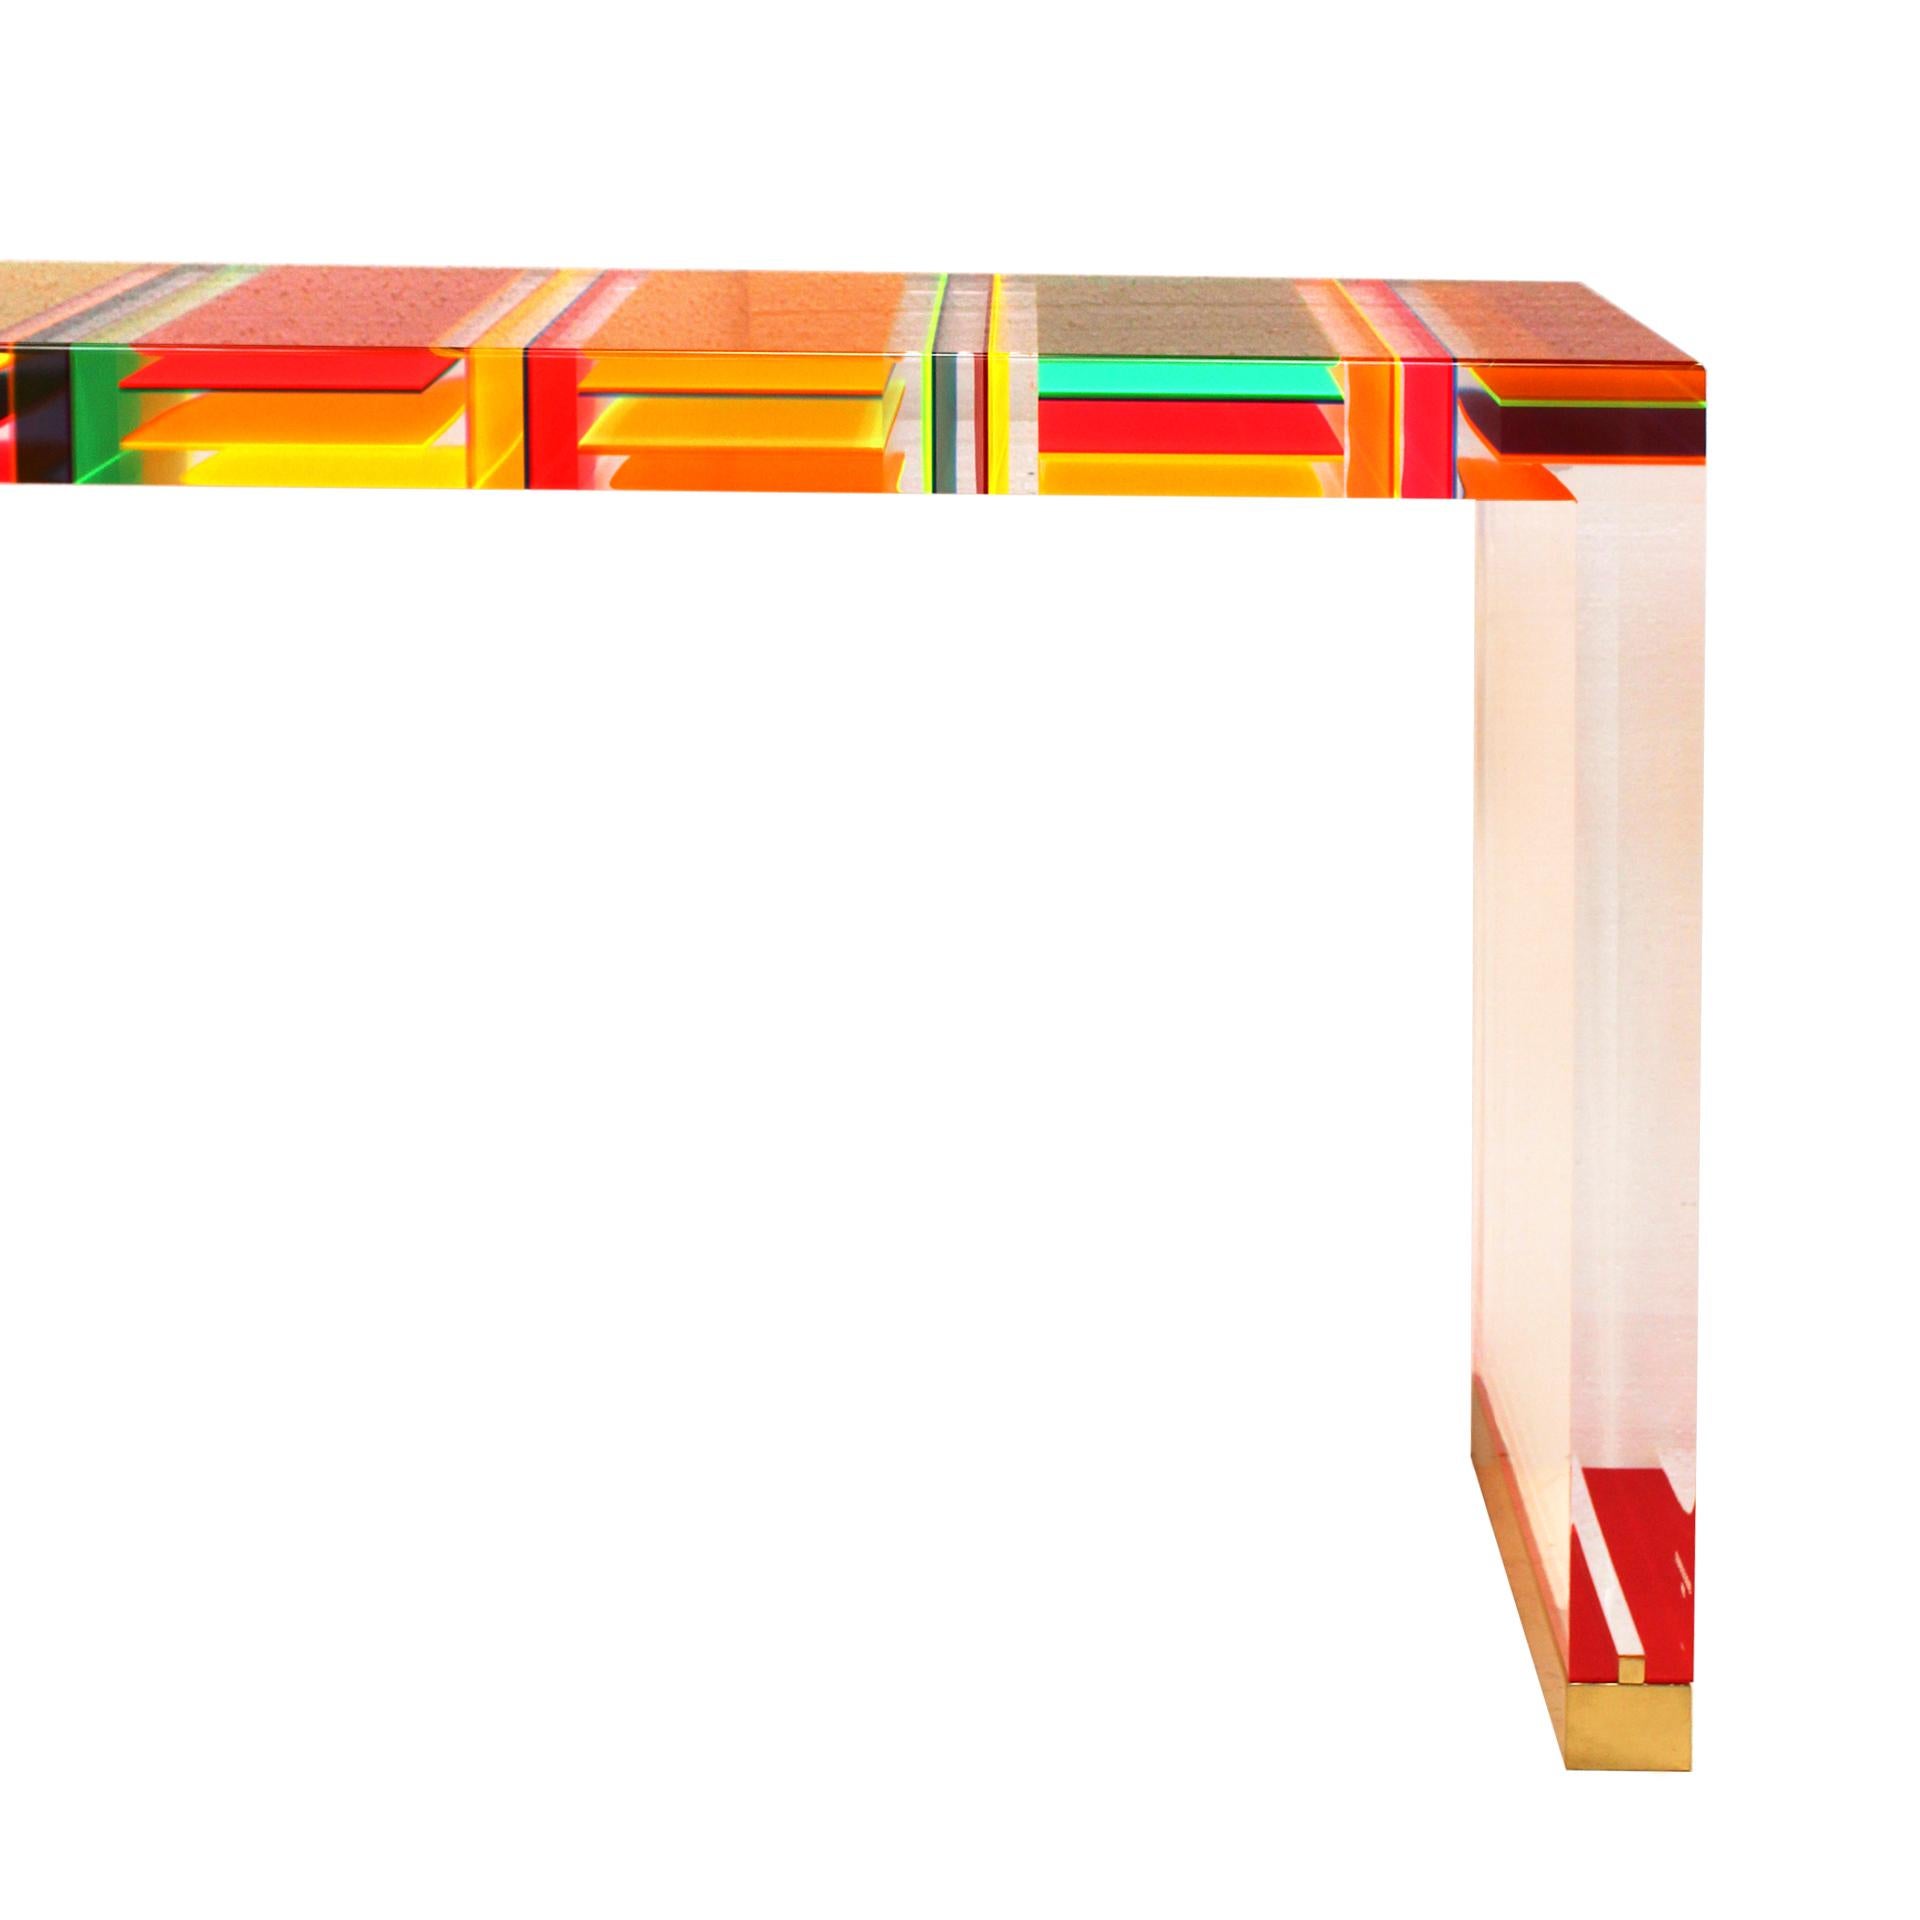 Table console rectangulaire conçue par le Studio Superego de Milan, réalisée en plexiglas multicolore et transparent de huit centimètres d'épaisseur et dont les pieds sont finis en laiton.

Chaque article proposé par LA Studio est contrôlé par notre